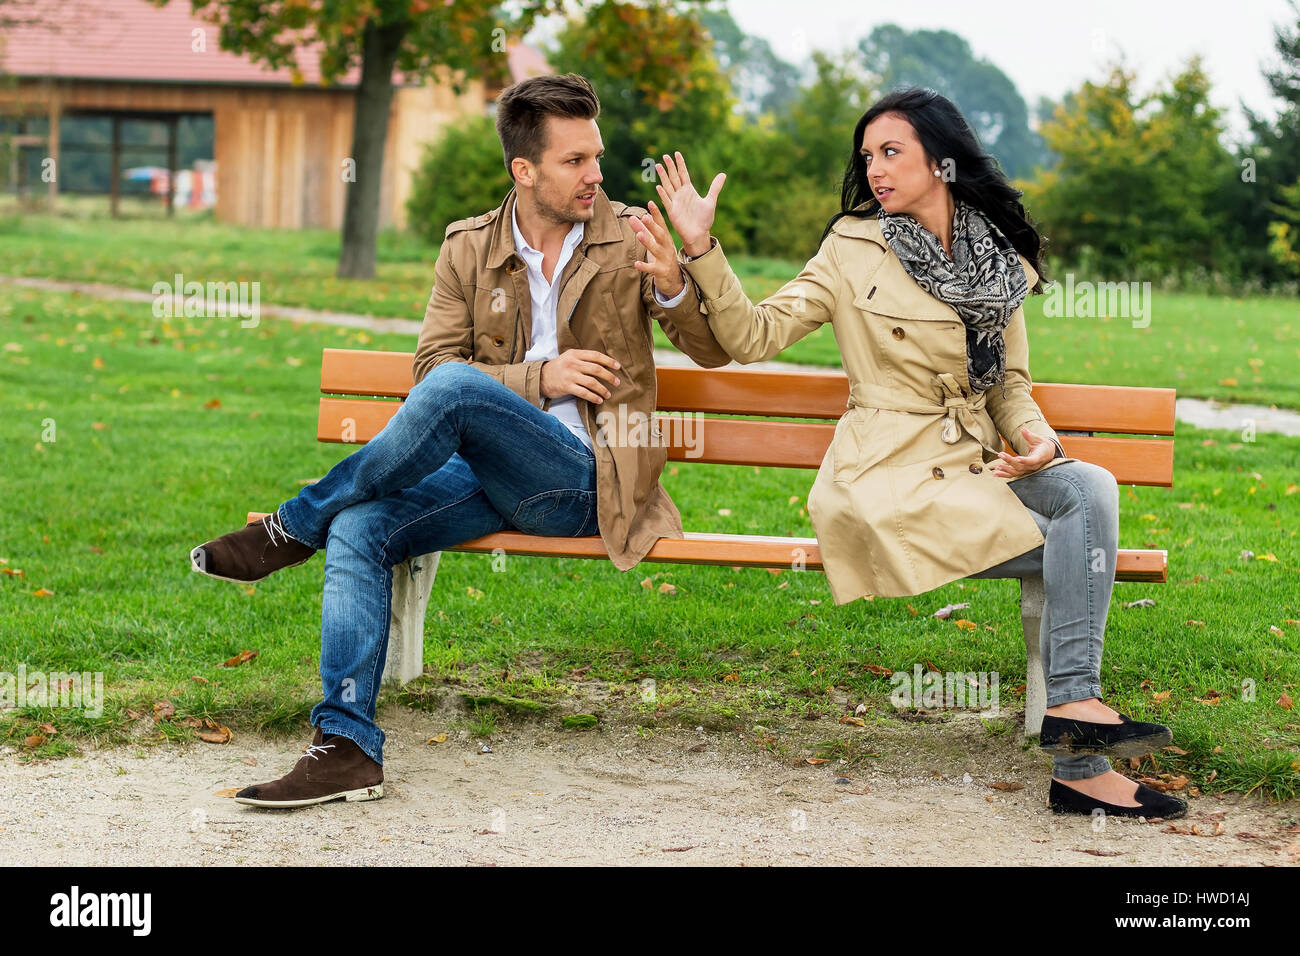 Una giovane coppia si siede su un parco-banco e sostiene, Ein junges Paar sitzt auf einer Parkbank und streitet Foto Stock